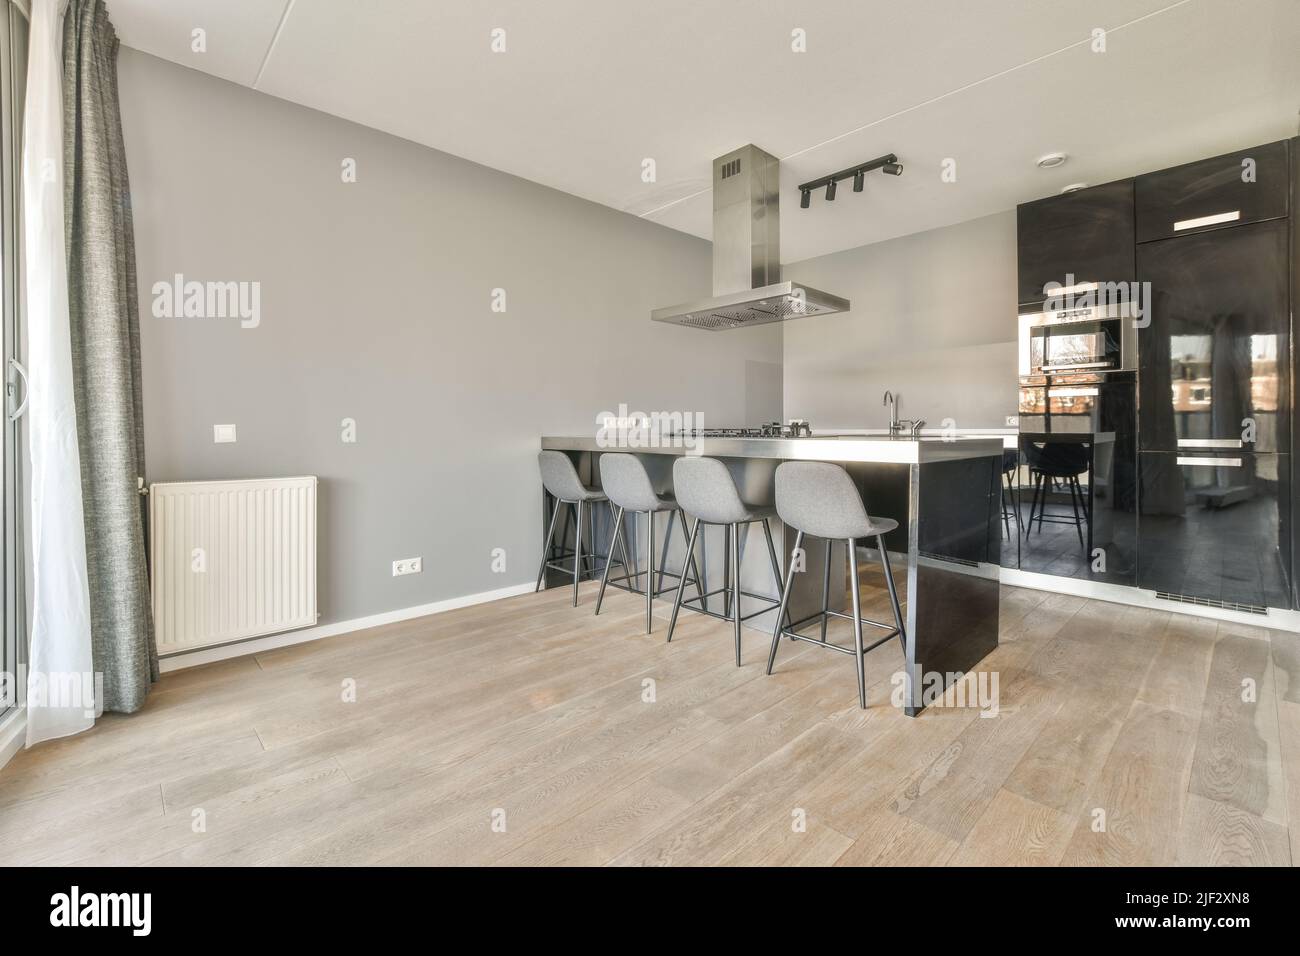 Interni di design moderno loft con cucina a vista in stile minimalista e spaziosa zona pranzo con tavolo e. sedie Foto Stock